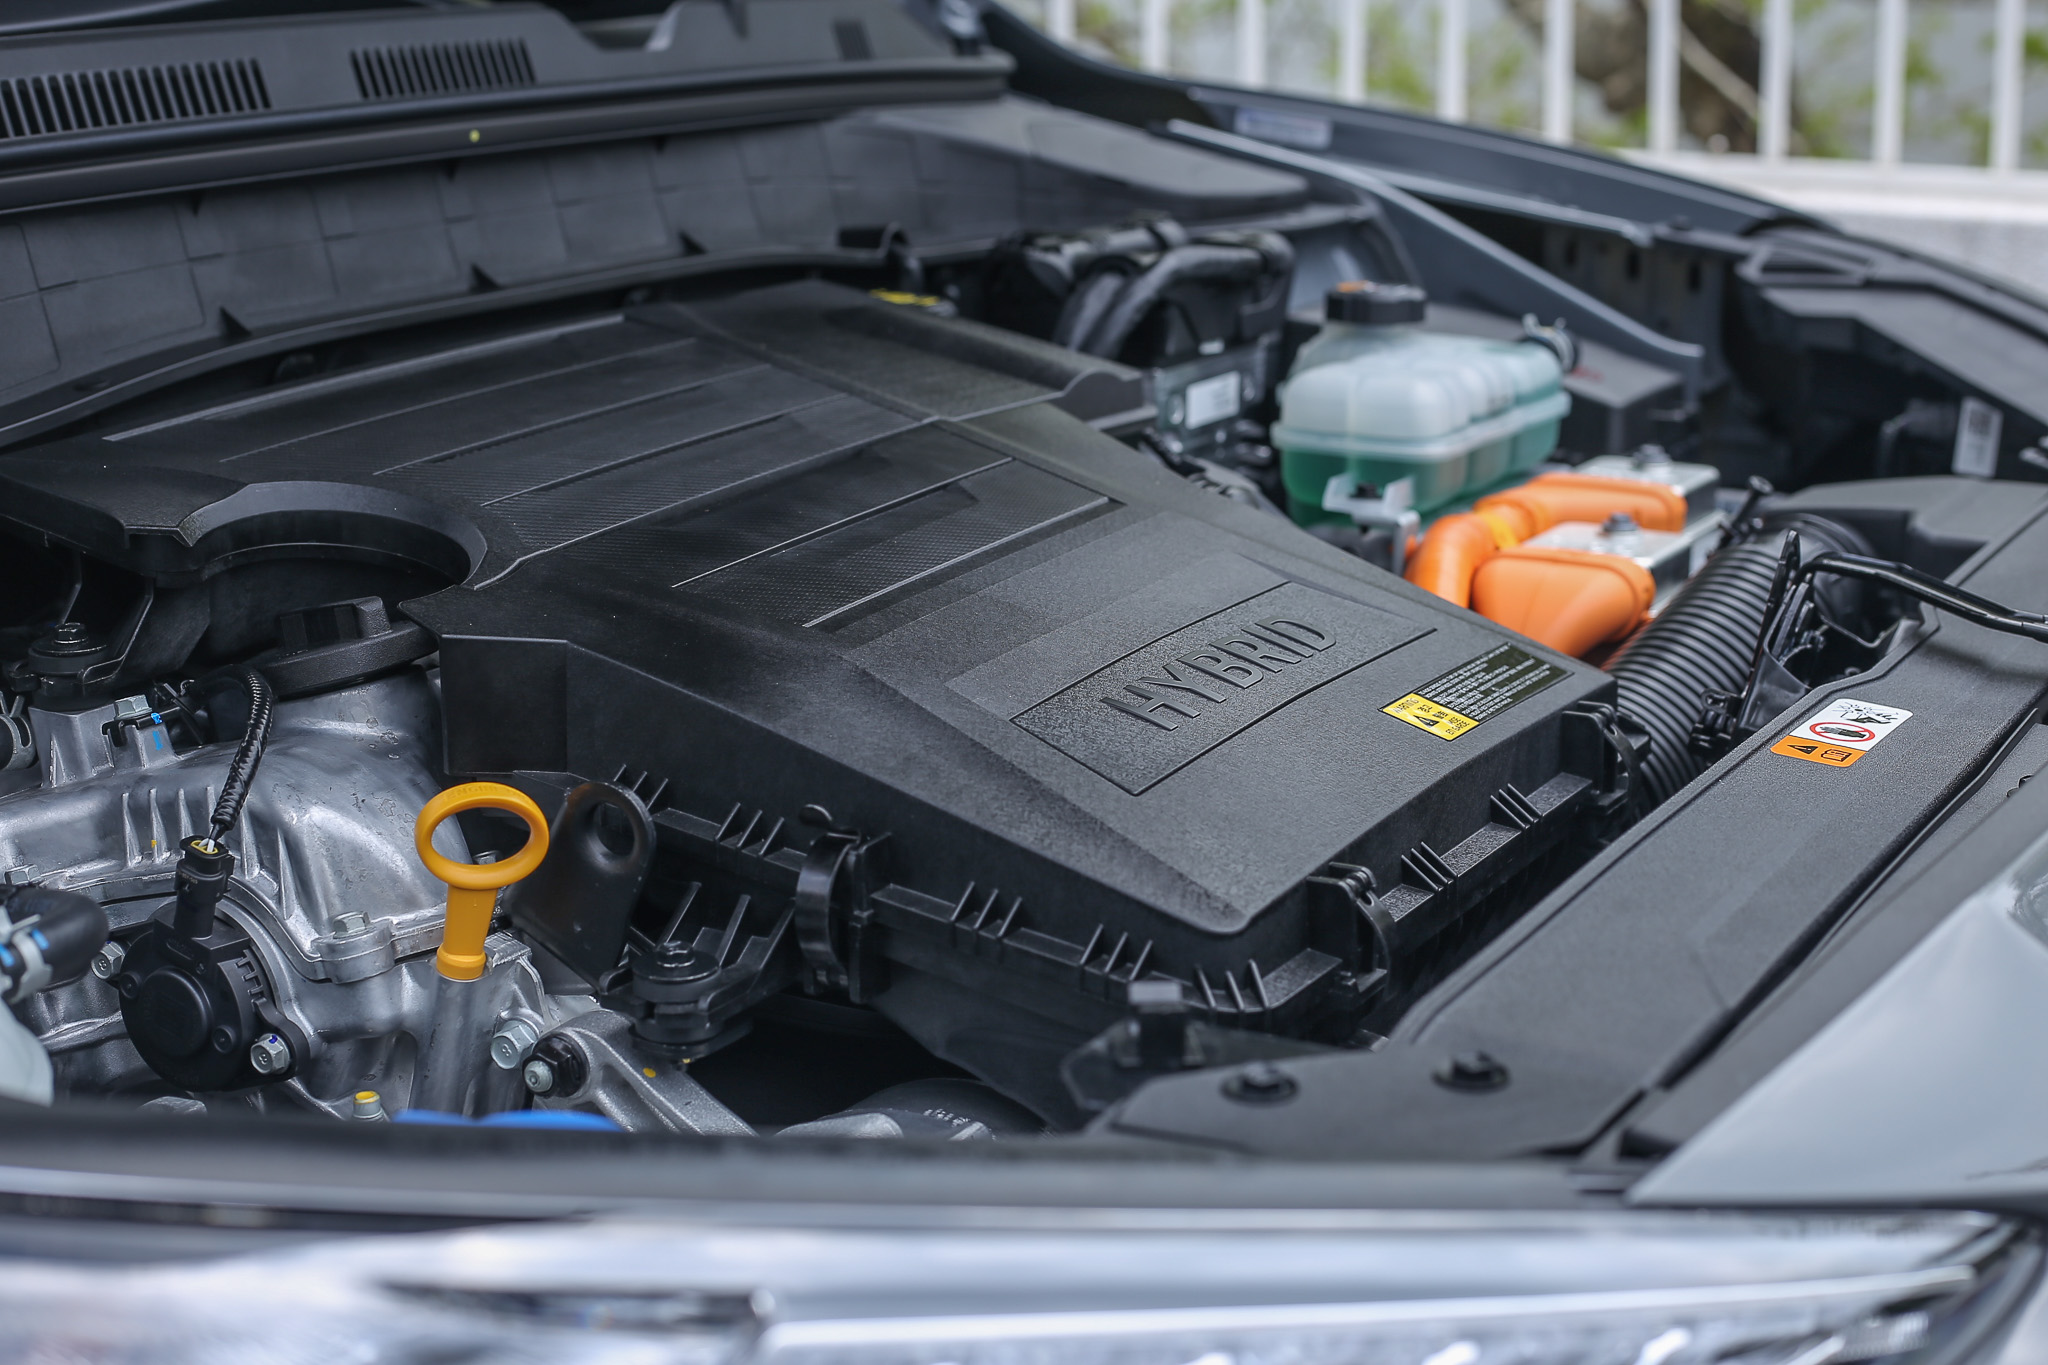 動力系統以直列四缸 1.6 升 Atkinson 循環汽油引擎為主，搭配採用鋰離子電池與電動馬達為主的電力驅動機構，最大綜效馬力為 141ps ，最大扭力為 27kgm。